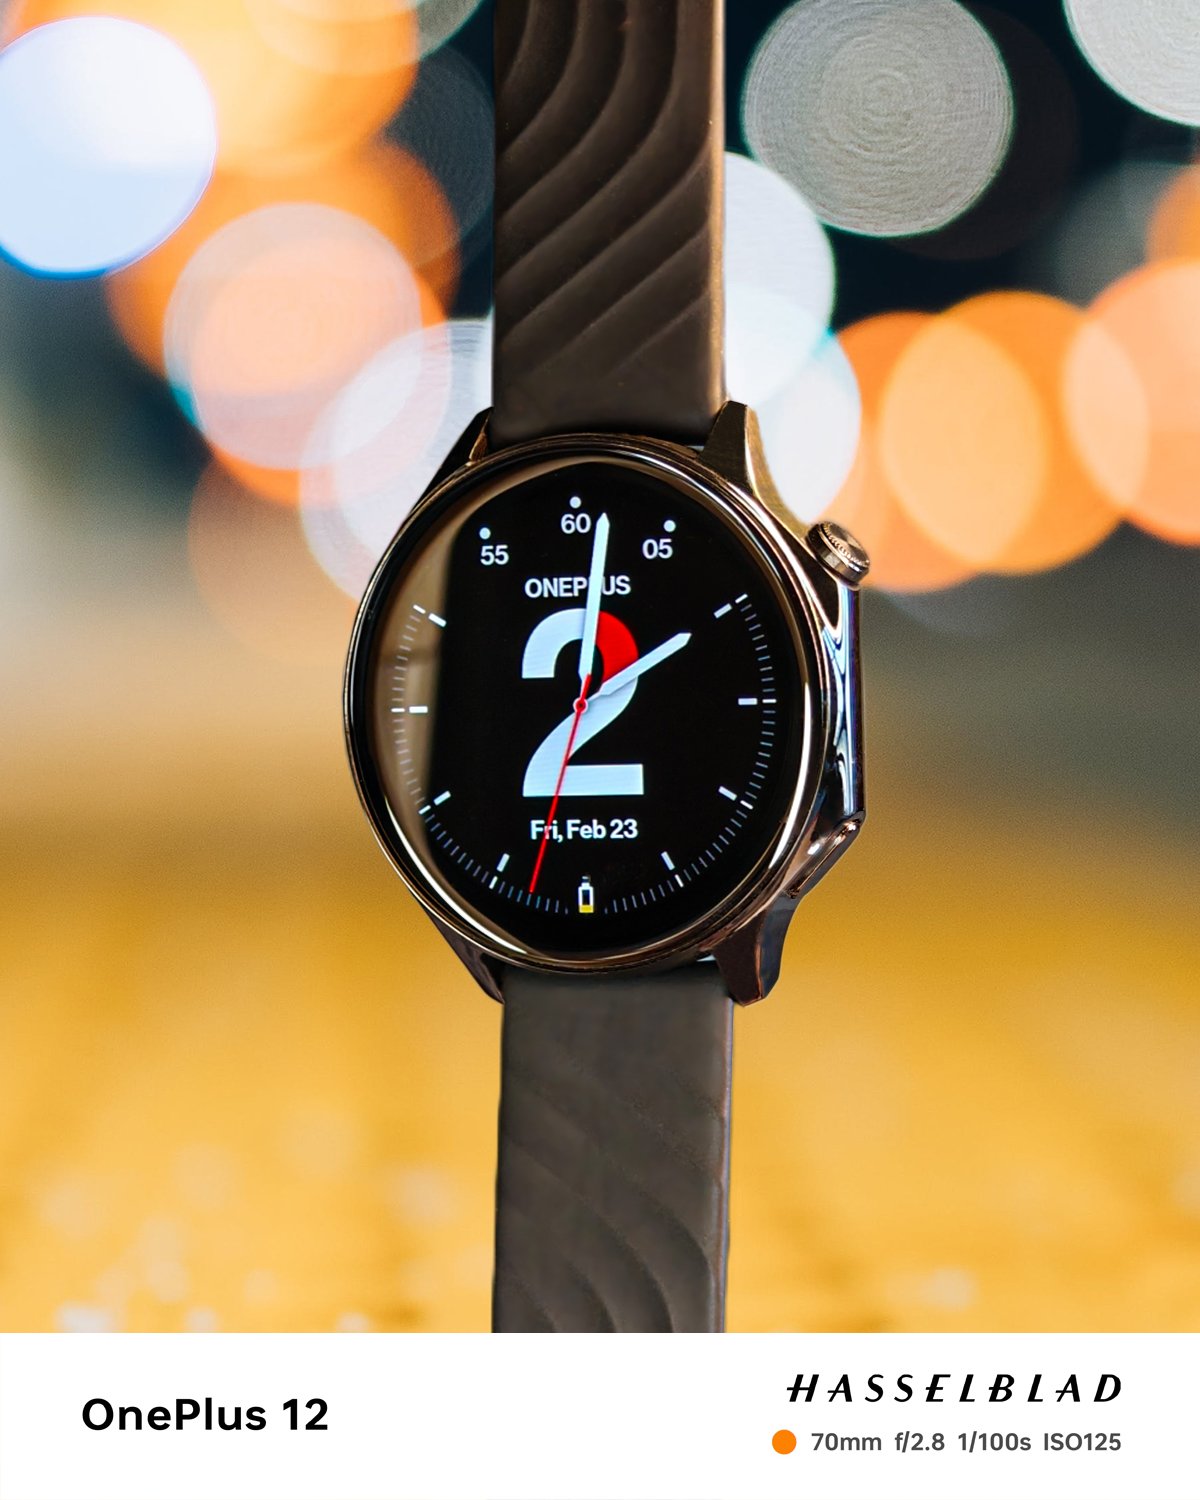 WearOS Google in OnePlus watch